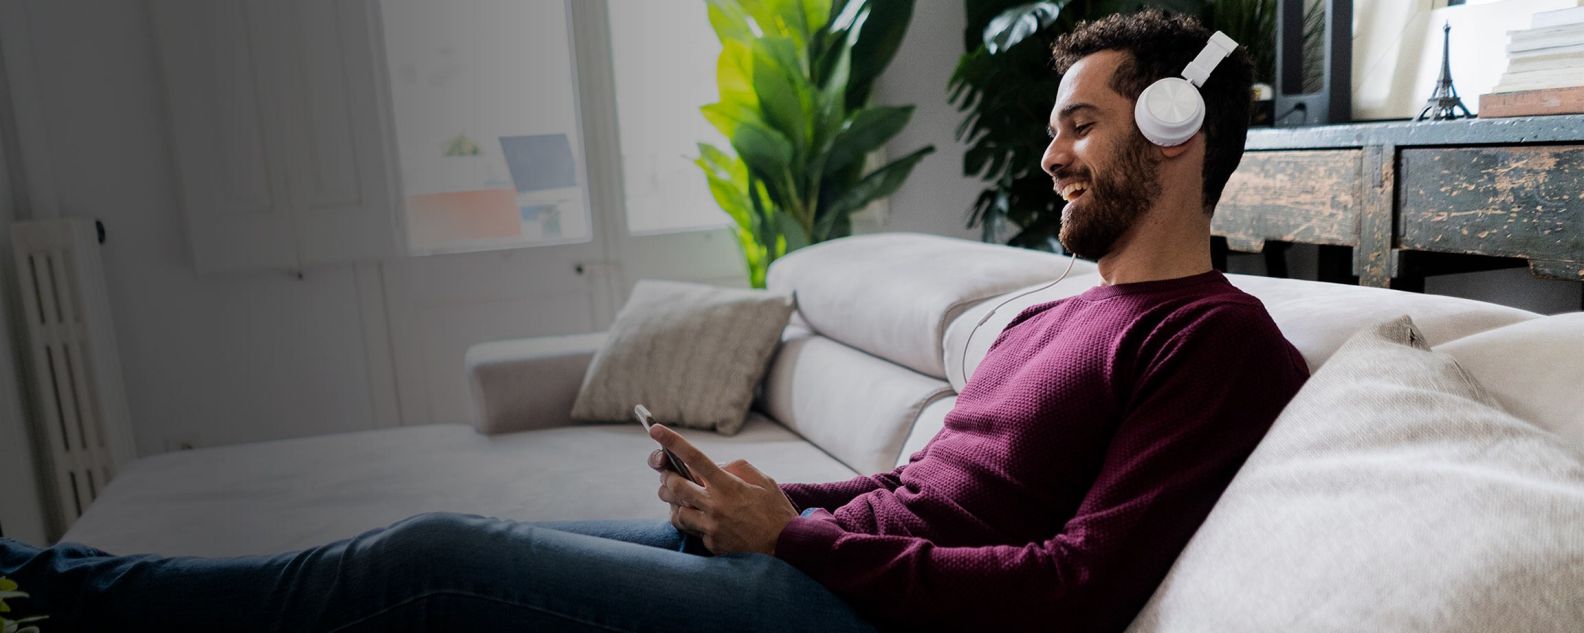 Ein lachender Mann sitzt mit Handy und Kopfhörern auf der Couch